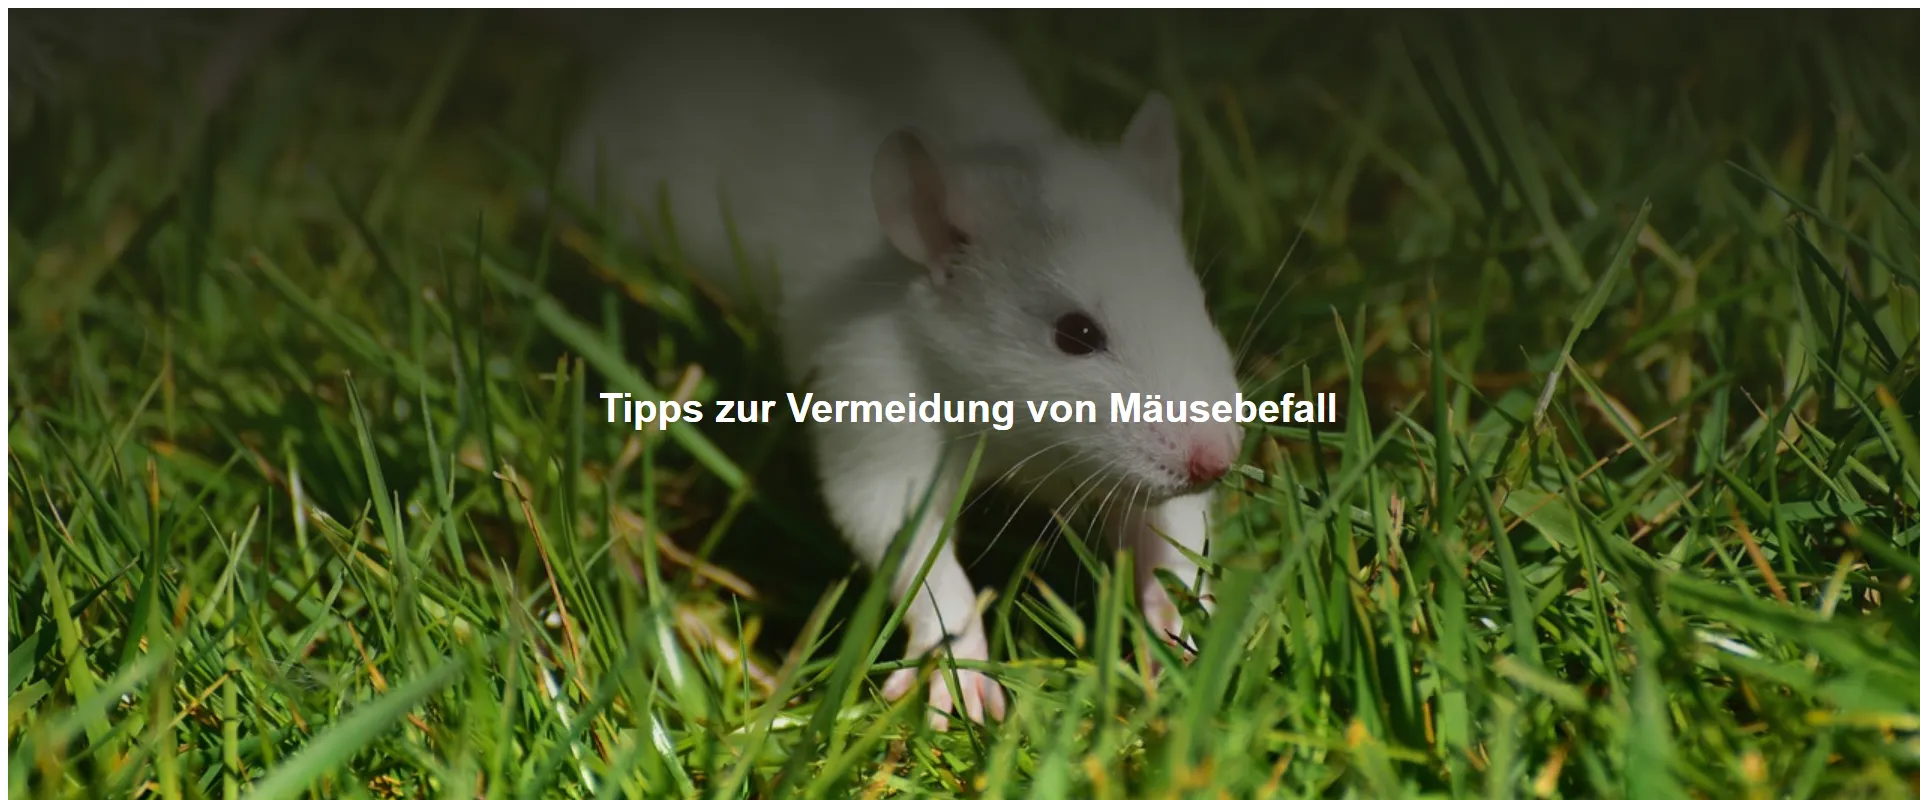 Tipps zur Vermeidung von Mäusebefall